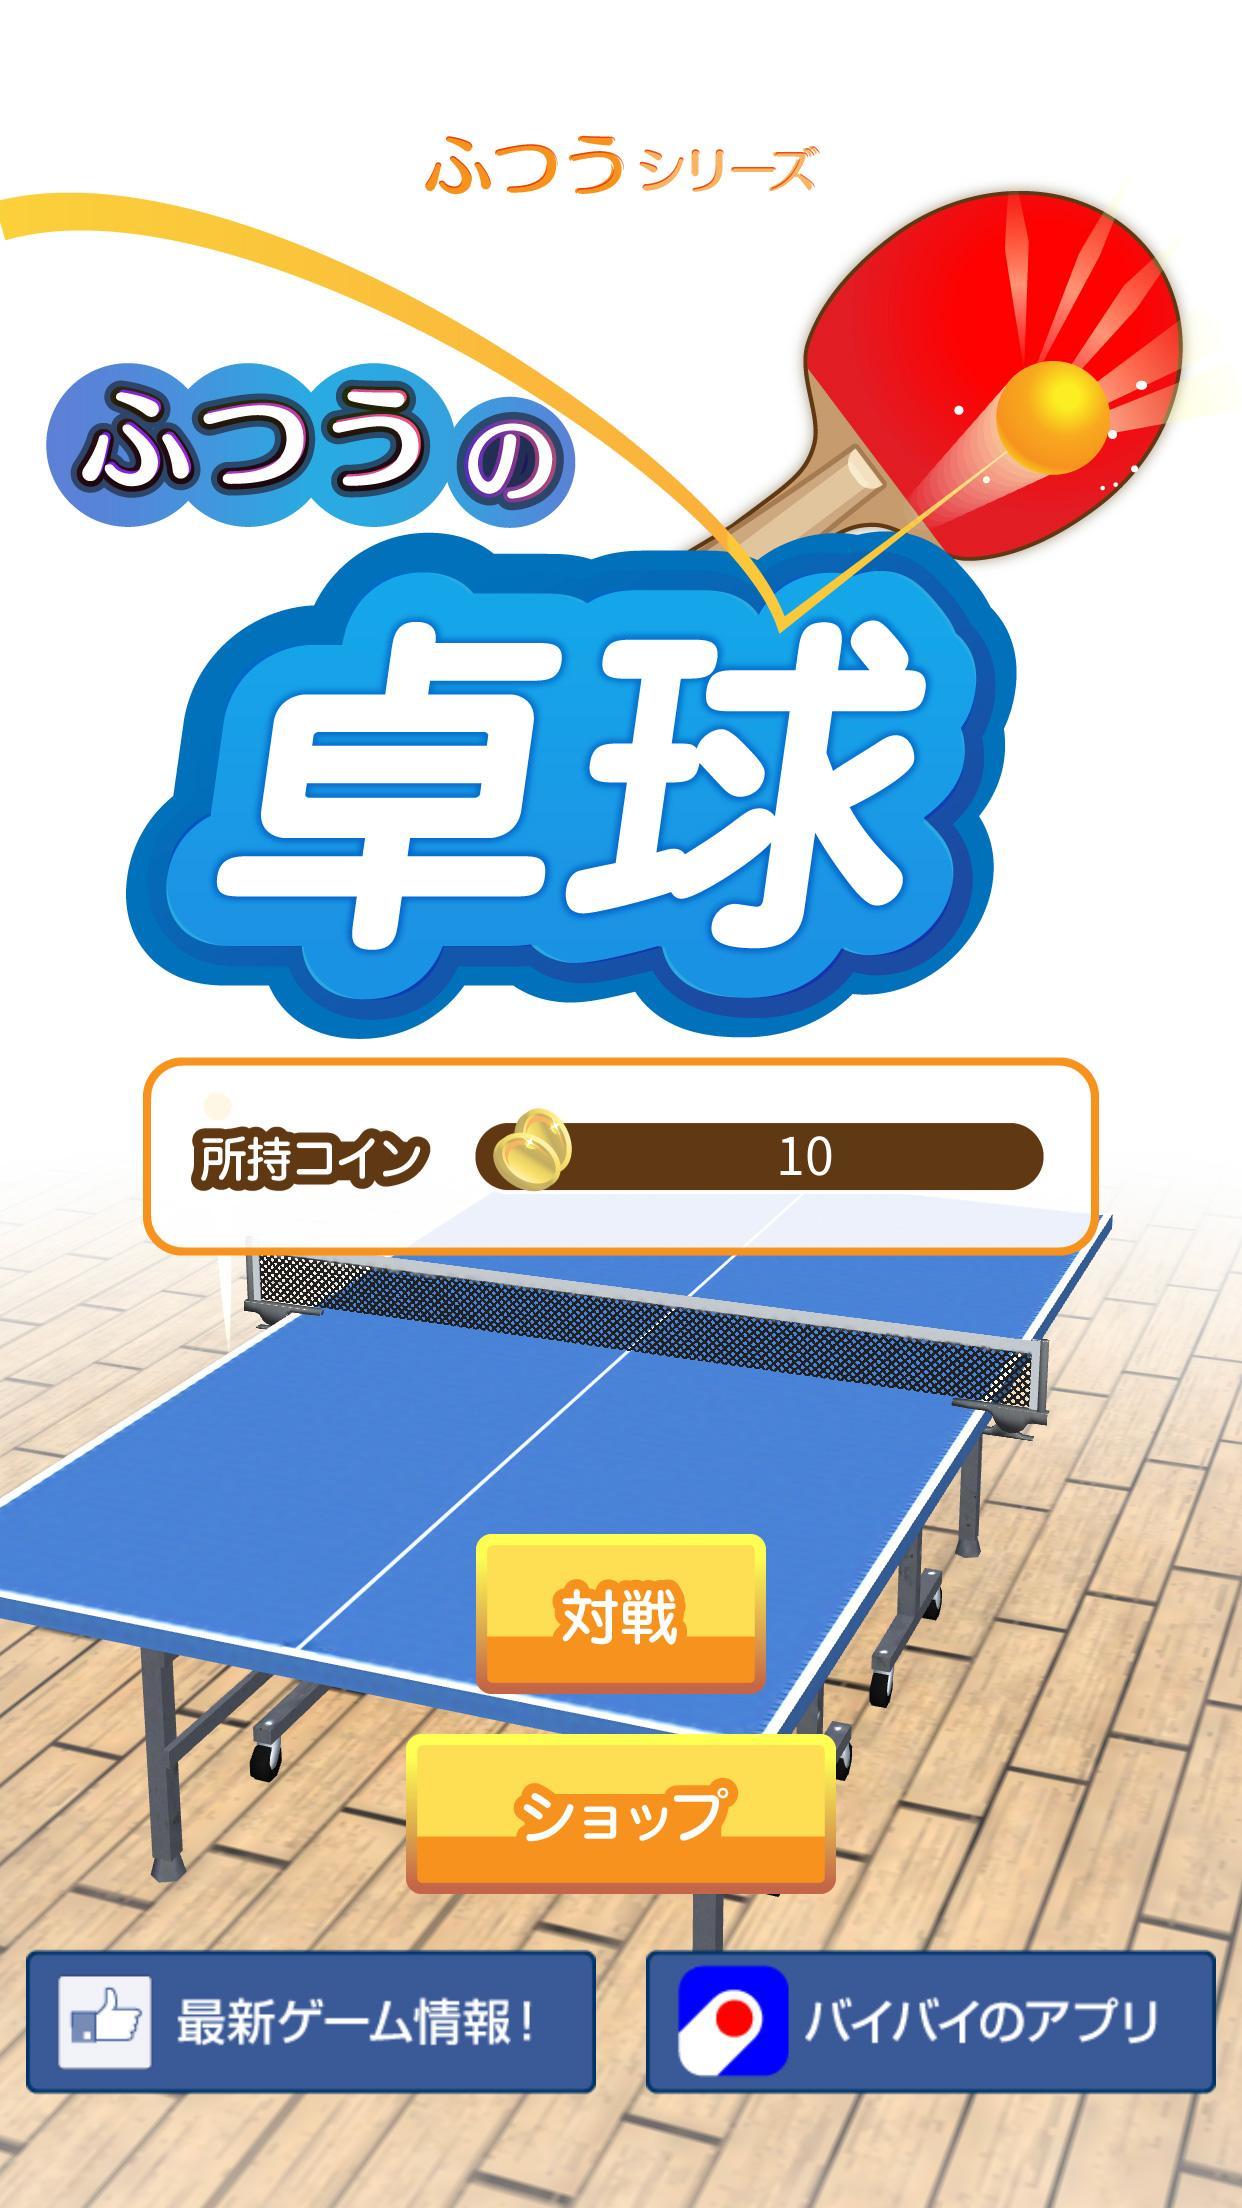 Screenshot 1 of Regular table tennis Free ping pong game 1.0.1